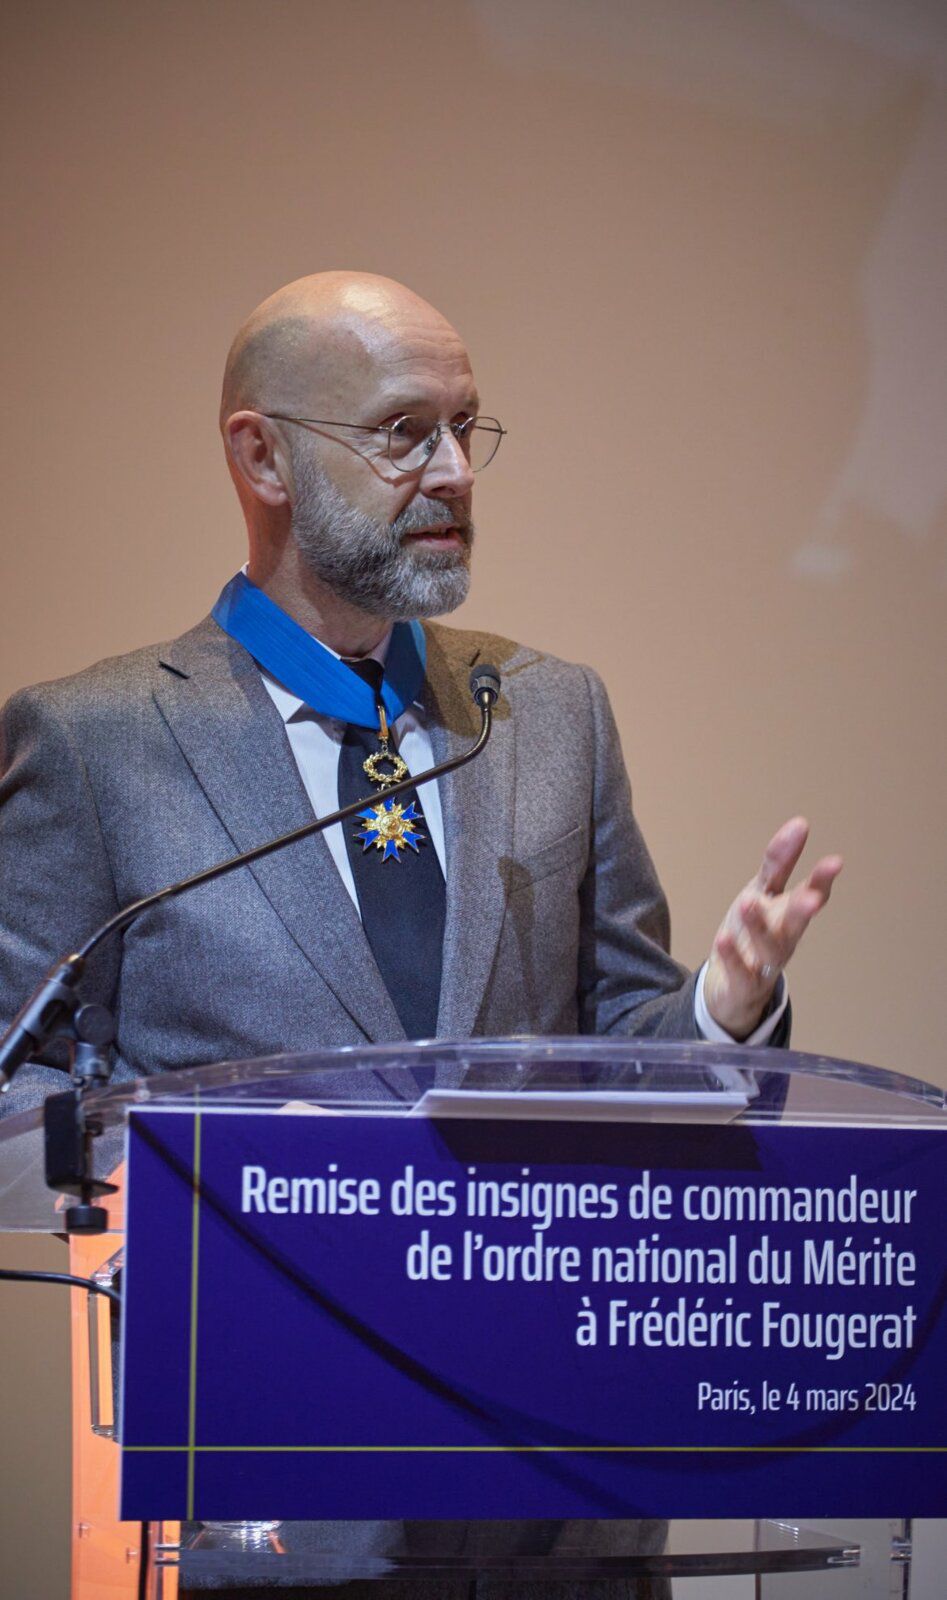 Discours de Frédéric Fougerat, à l'occasion de la cérémonie de remise des insignes de commandeur de l'ordre national du Mérite